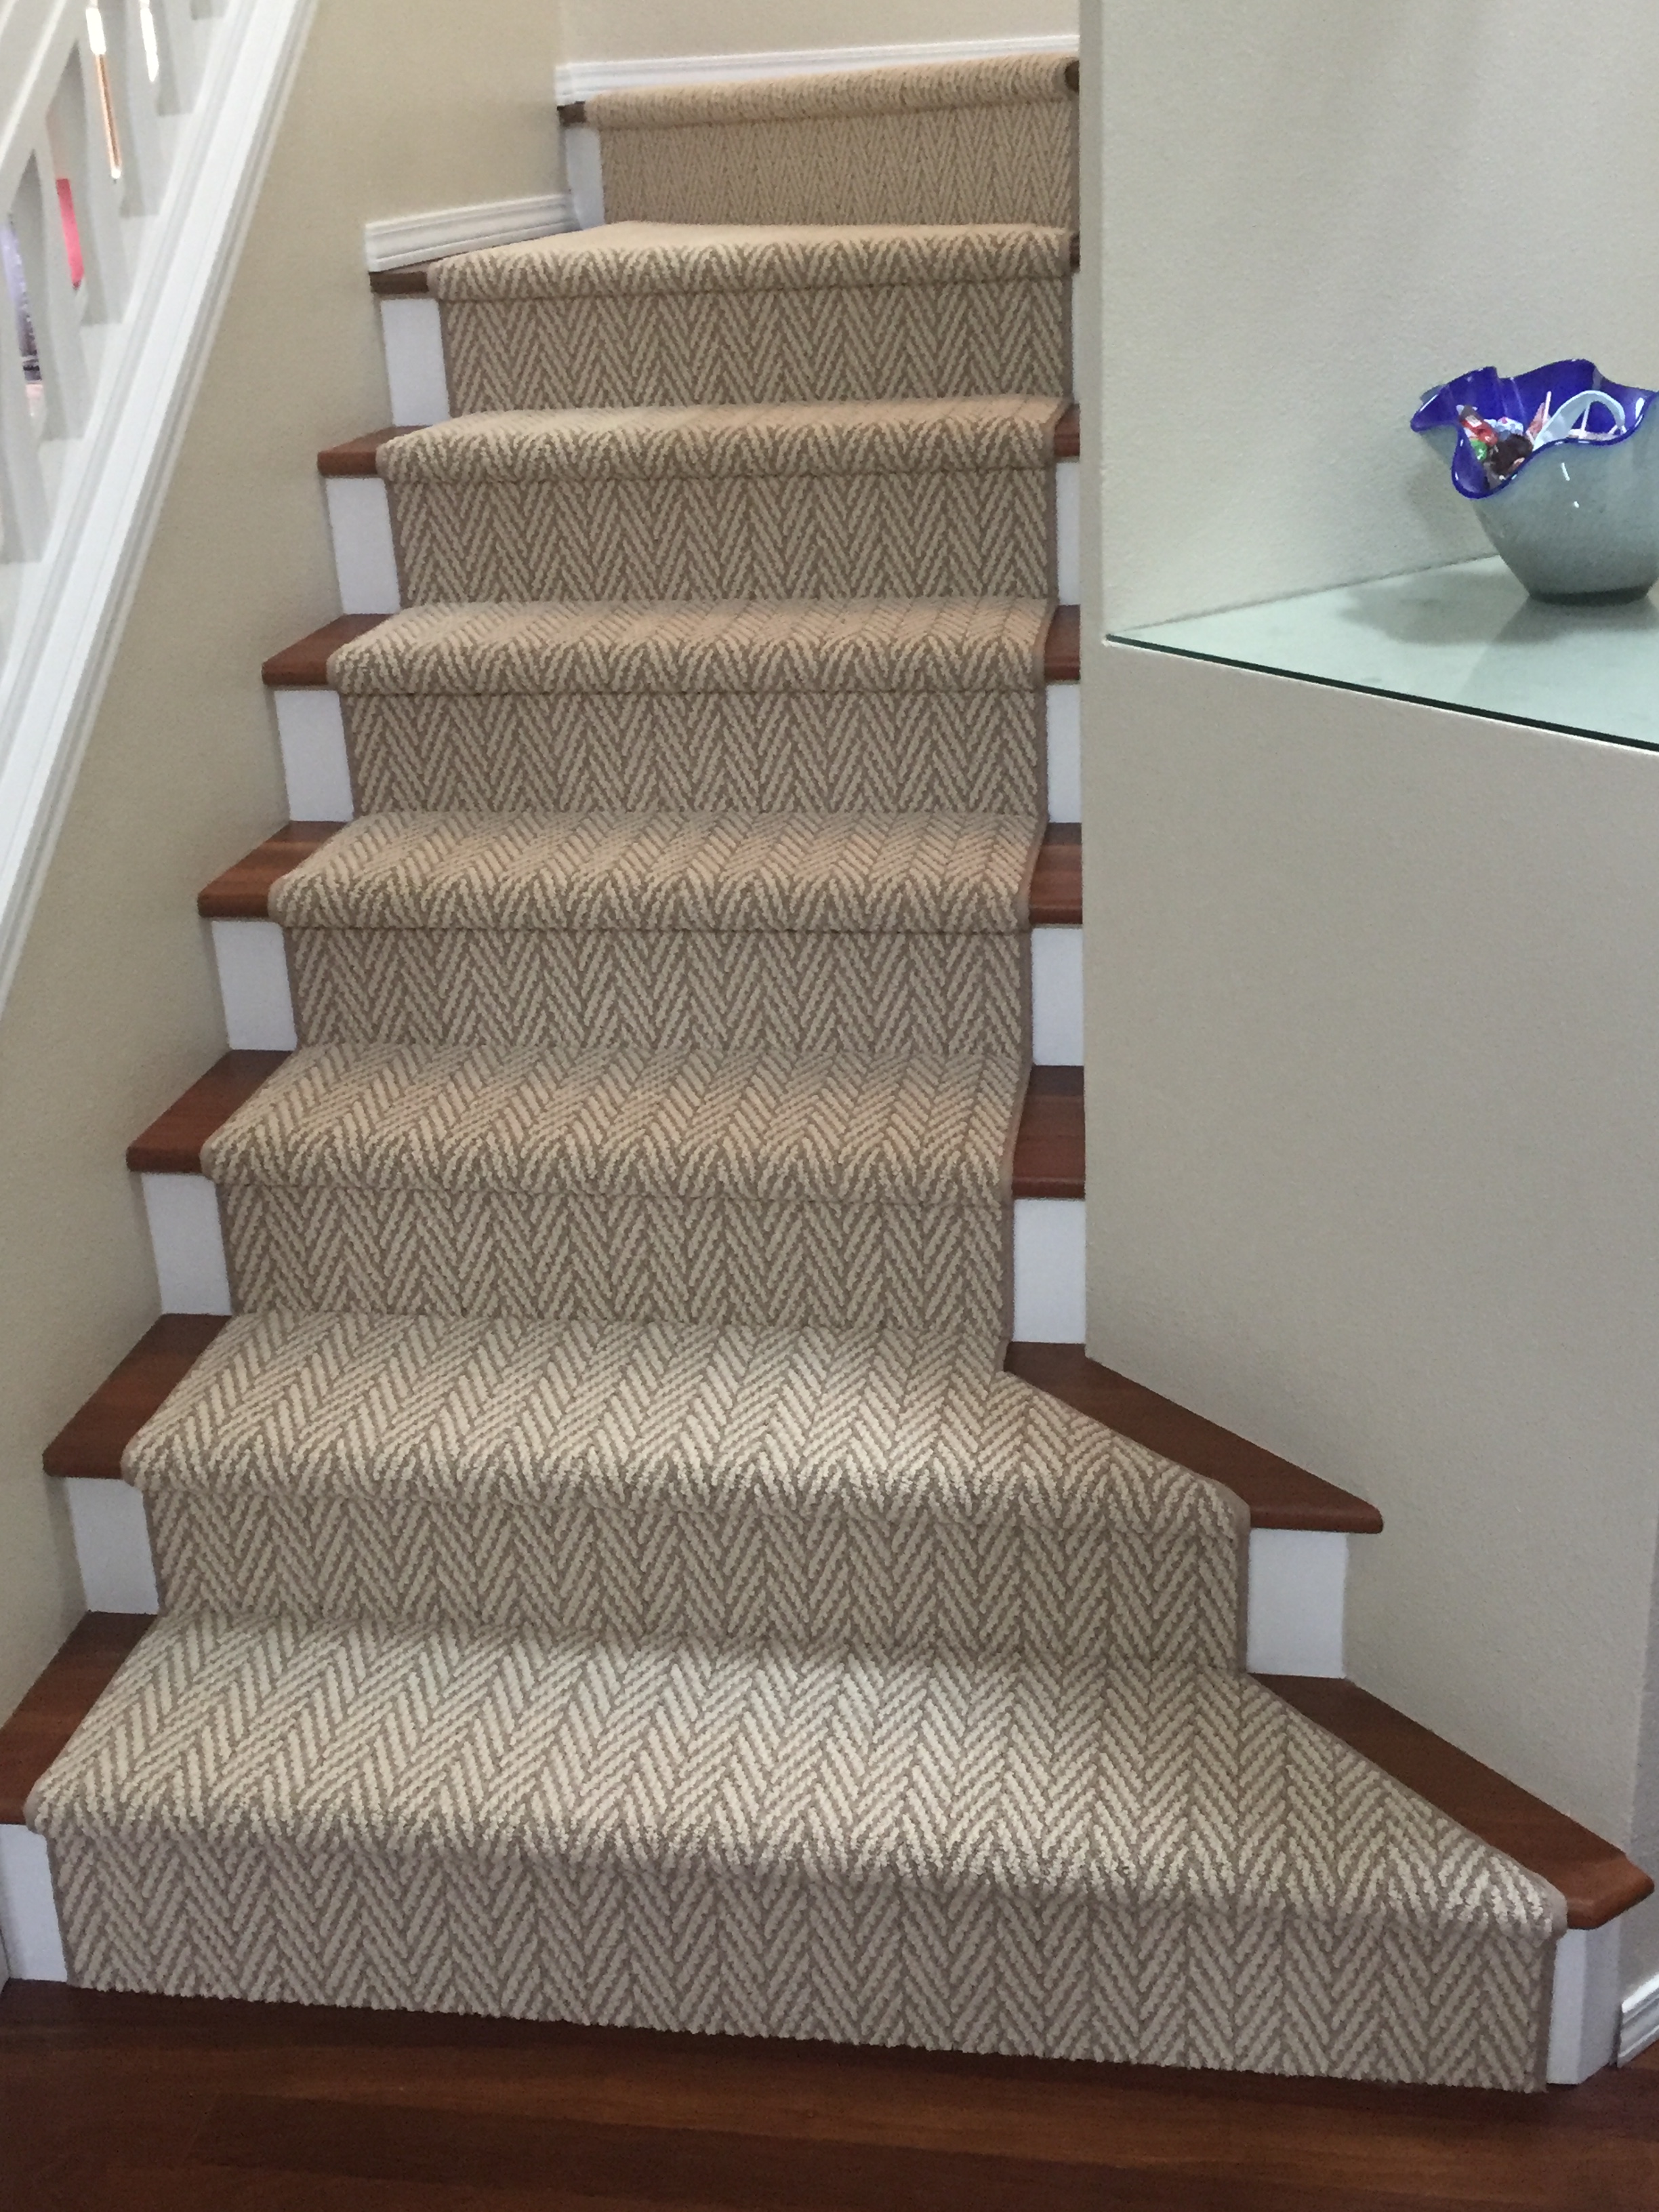 Carpet Flooring Installations Gallery, Hardwood Floor Meets Carpeted Stairs